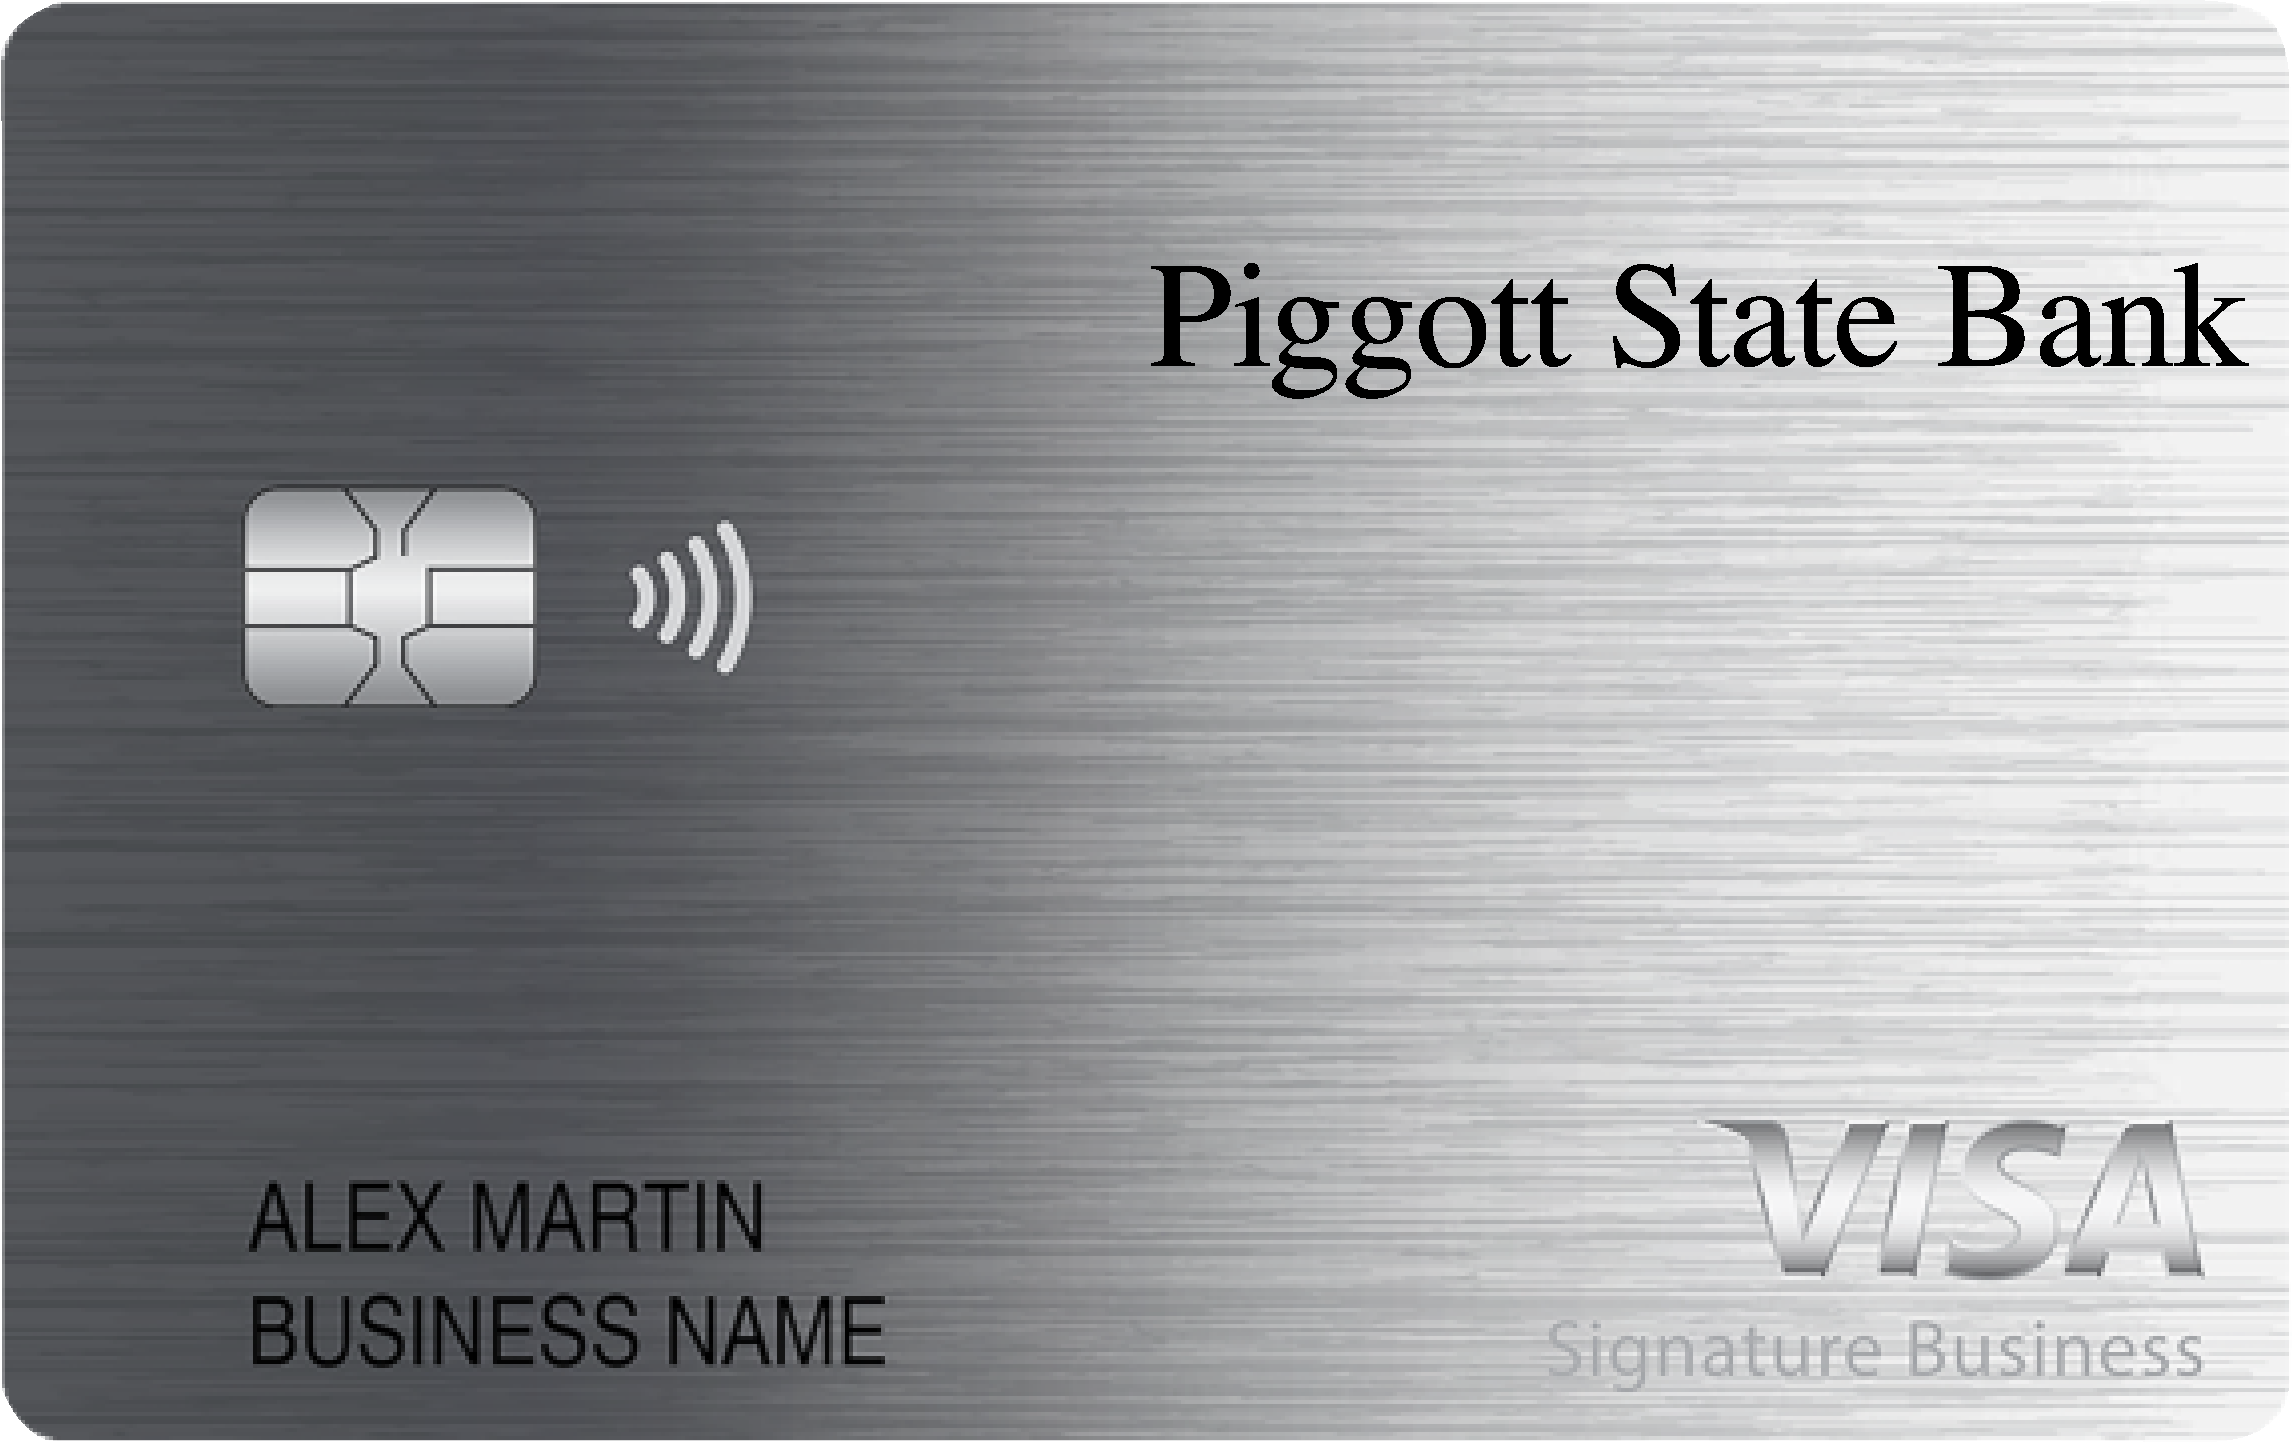 Piggott State Bank Smart Business Rewards Card